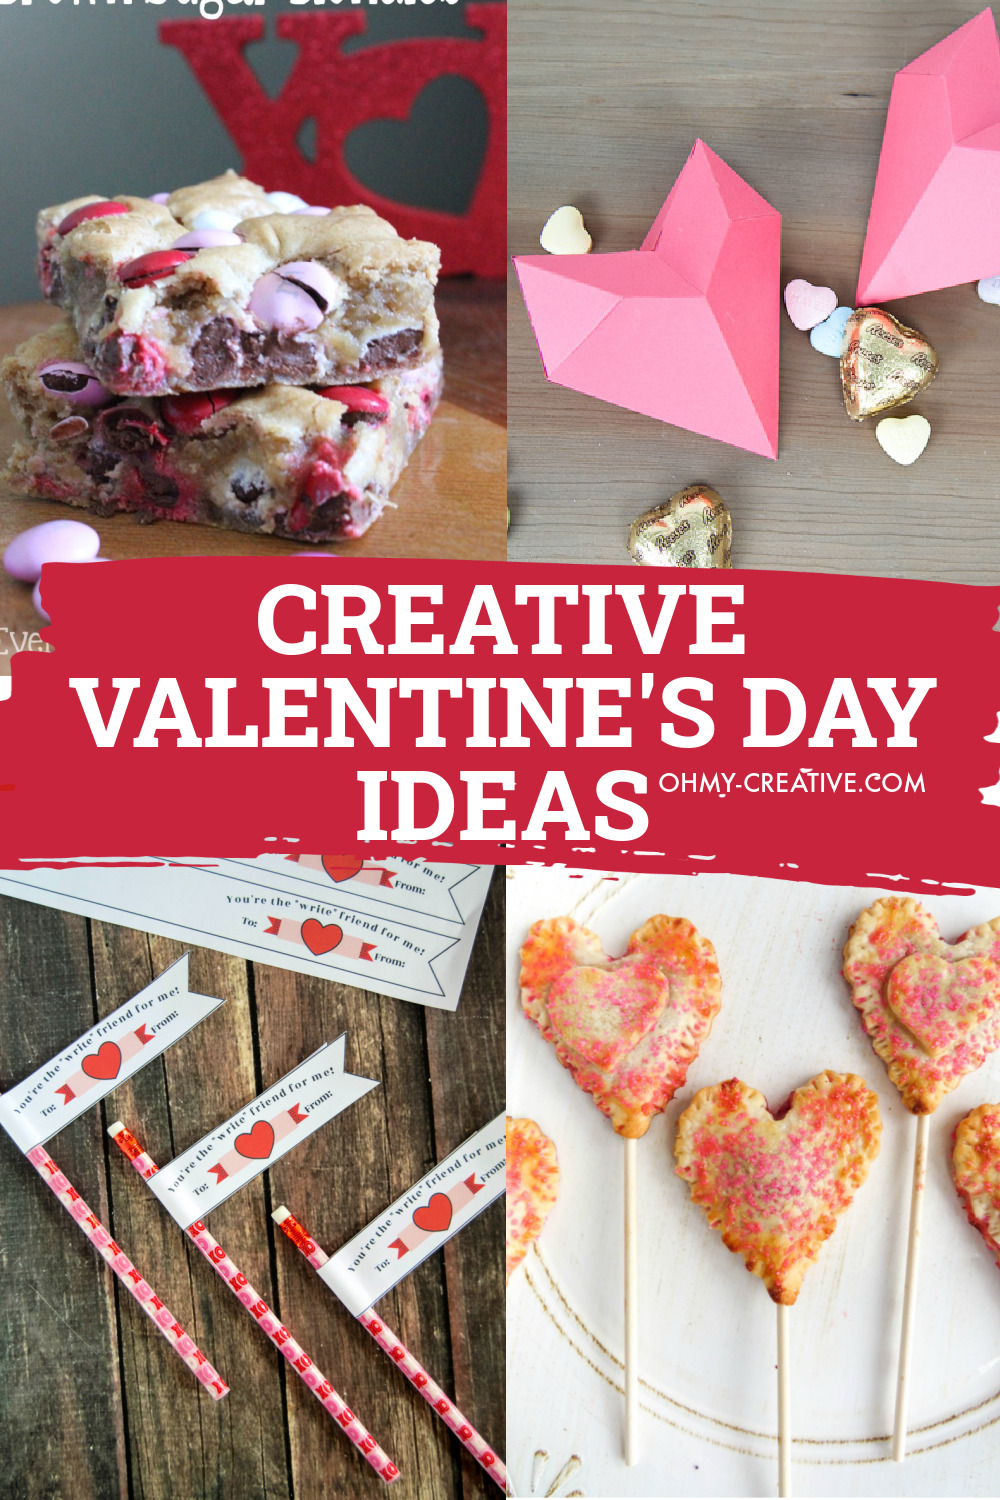 Creative Valentine’s Day Ideas